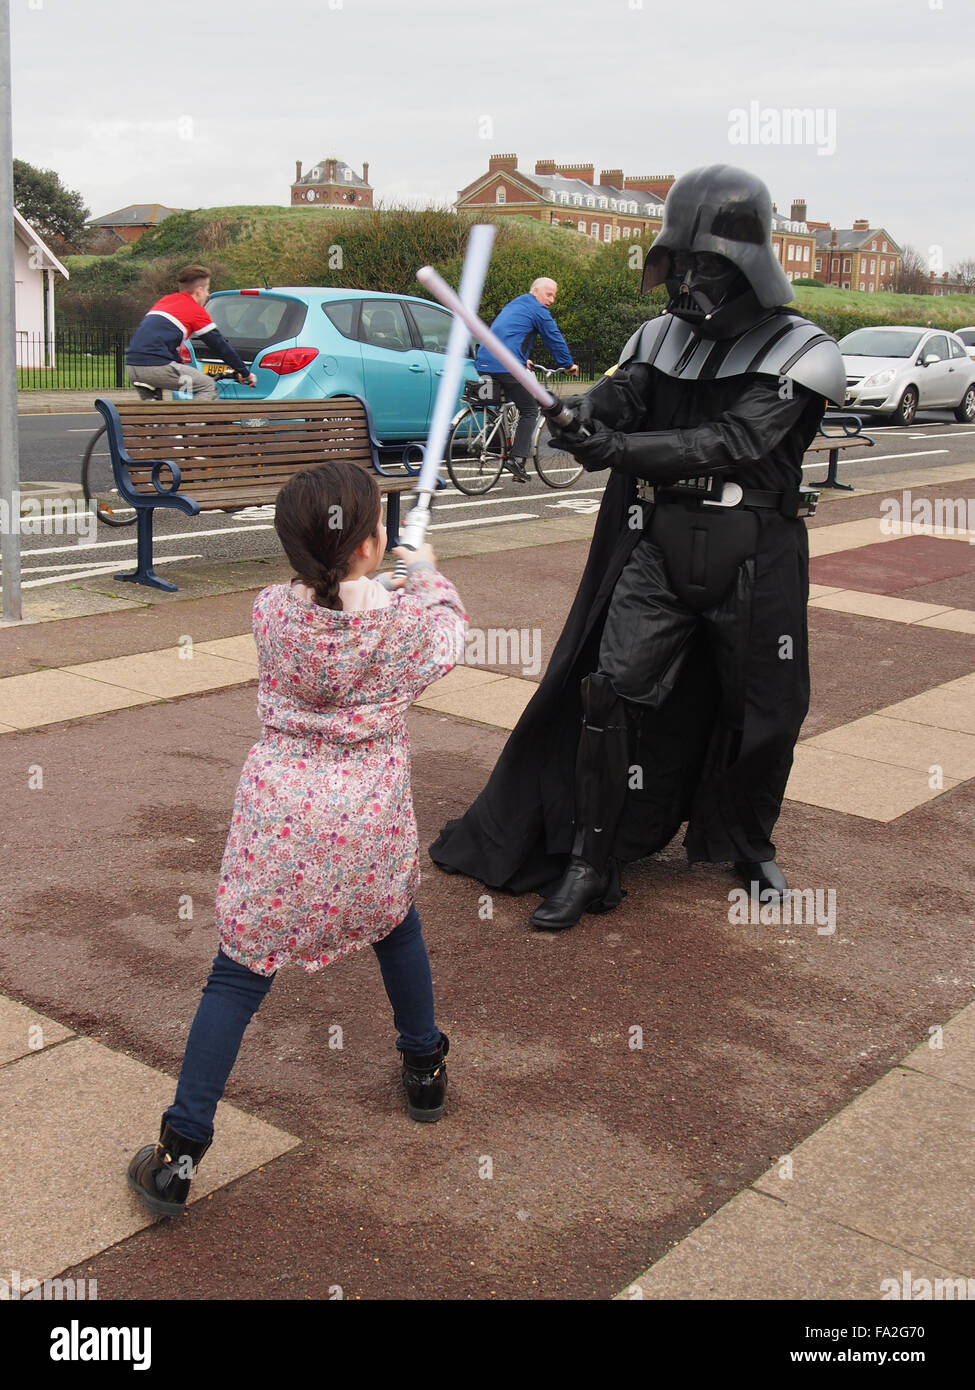 Darth Vader von Star Wars hat einen Lichtschwert-Kampf mit einem kleinen  Kind auf dem Bürgersteig von Southsea Promenade, England Stockfotografie -  Alamy